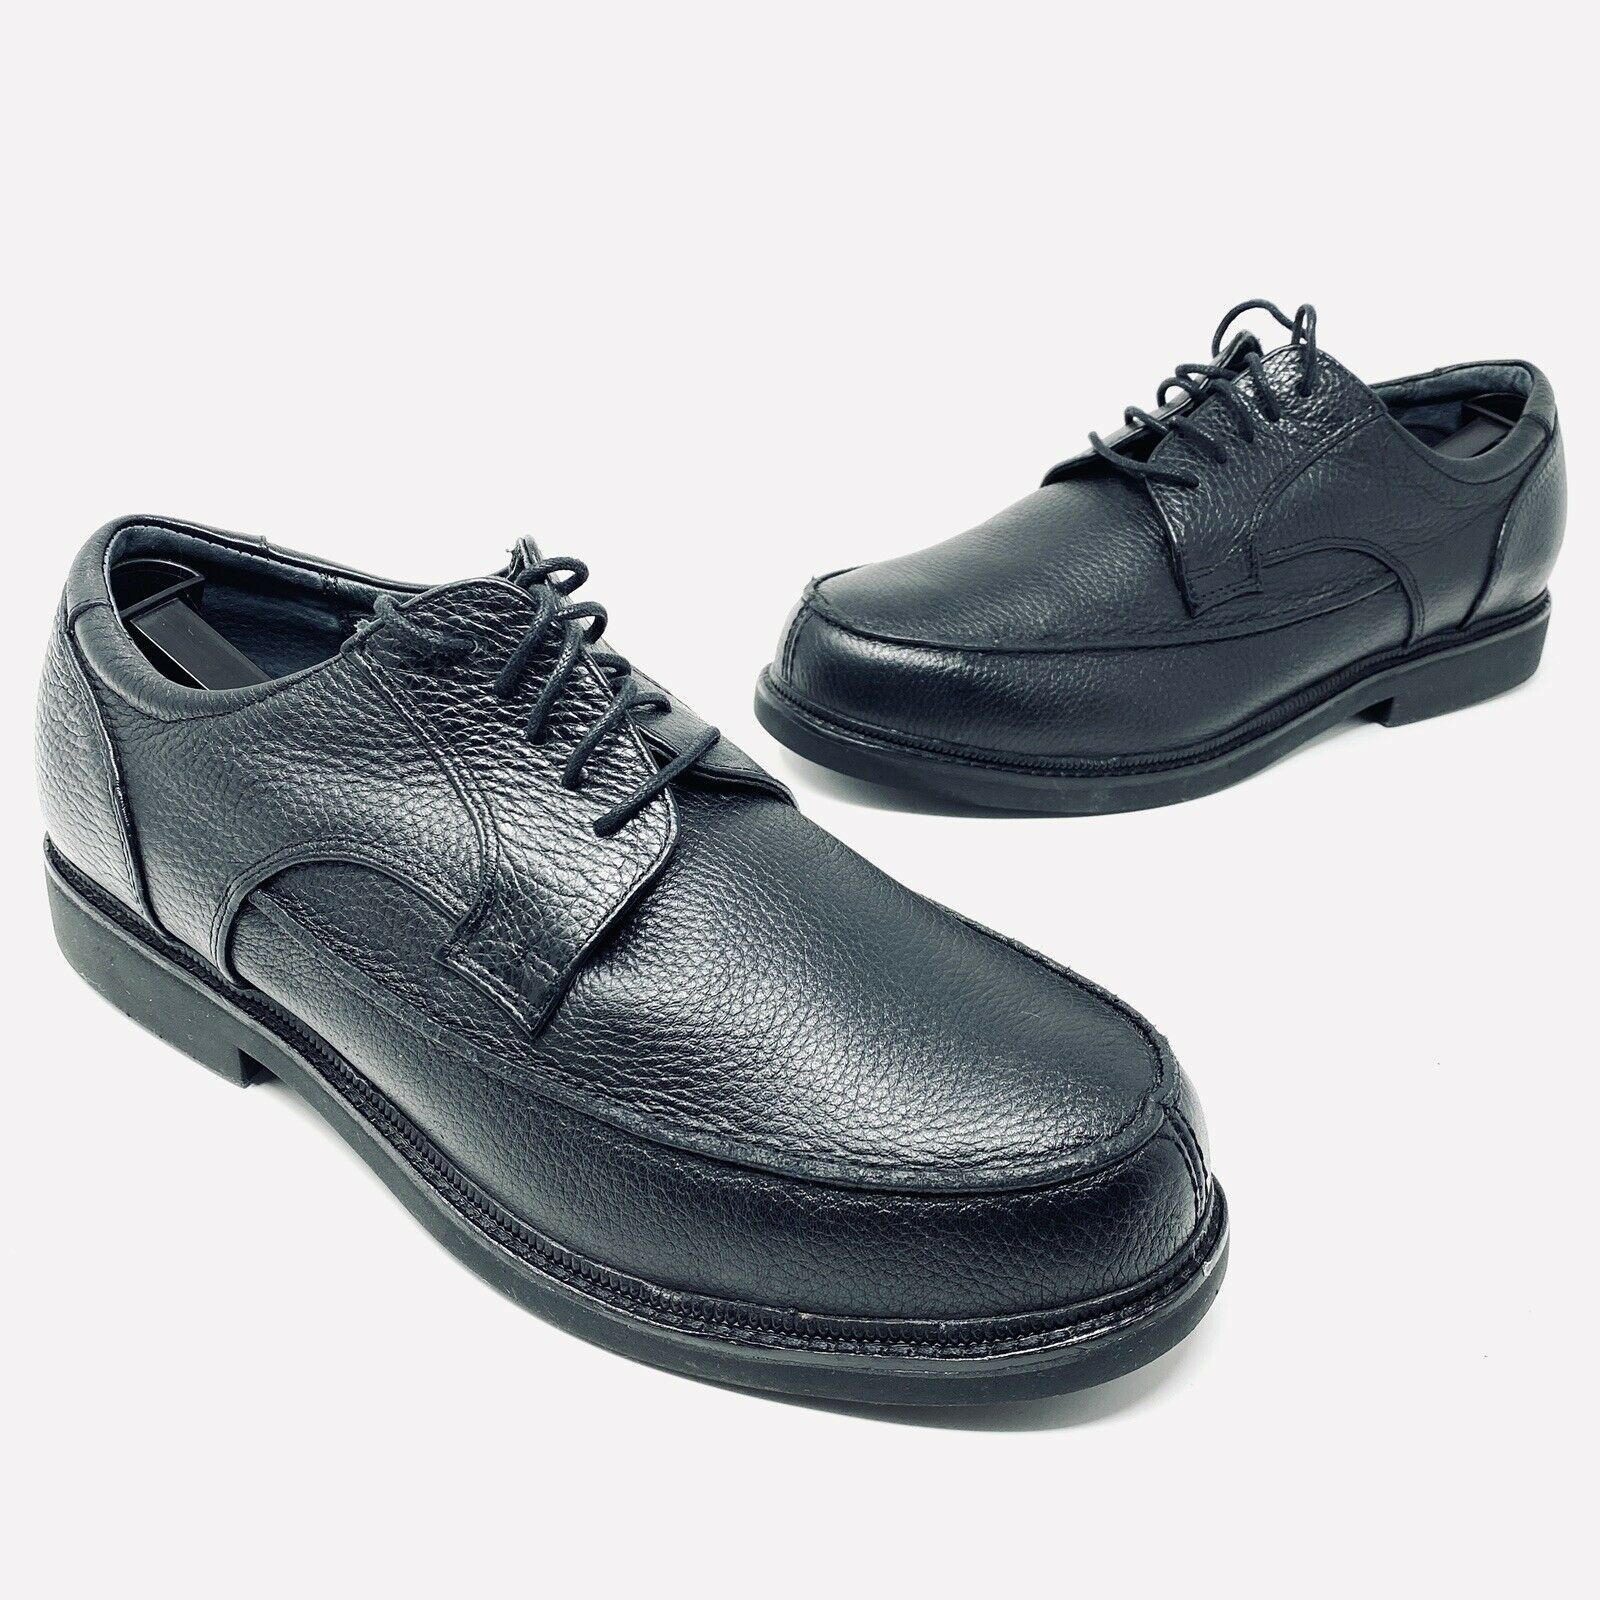 Apex Lexington Mens 11 X Wide Oxford Dress Shoes Black Leather LT900M Extra Wide